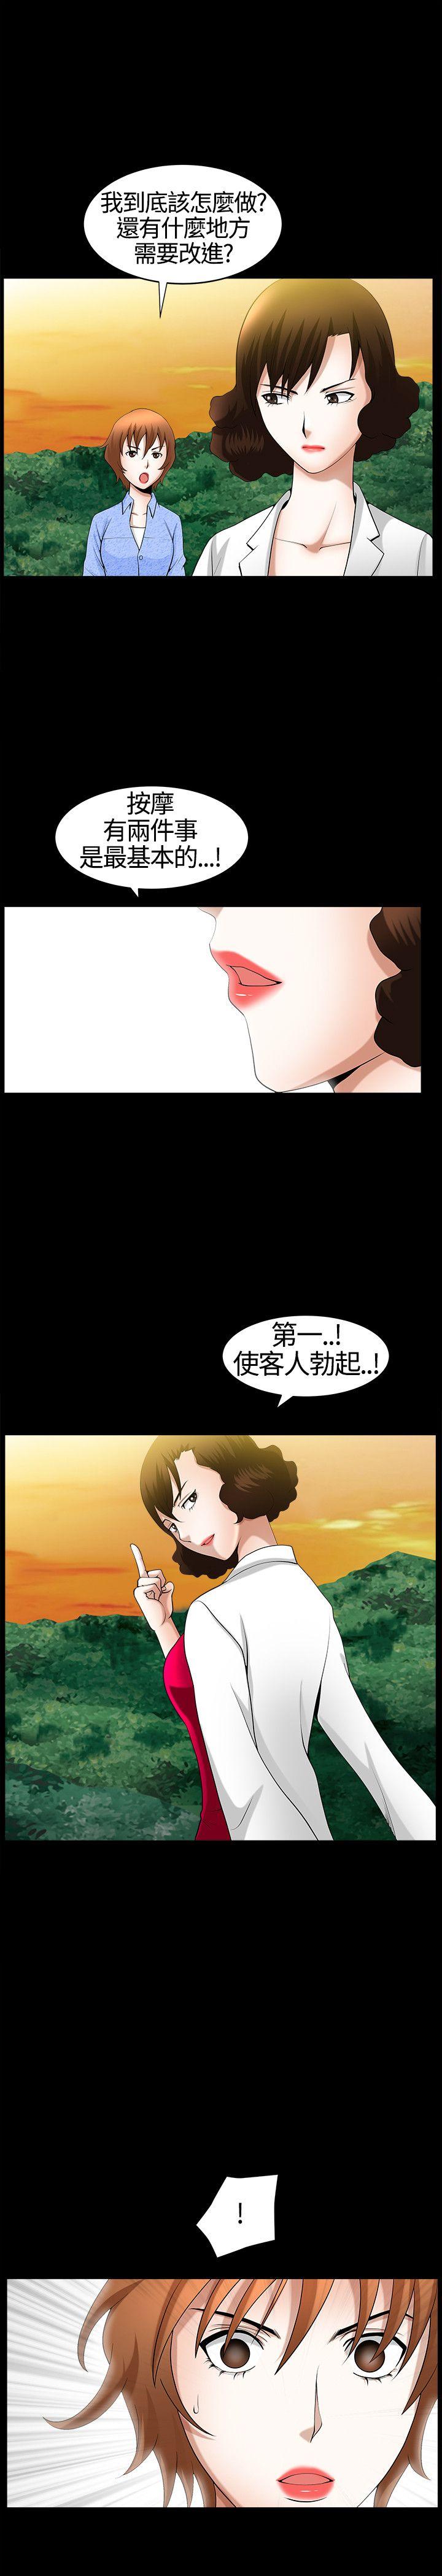 韩国污漫画 人妻性解放3:粗糙的手 第20话 28